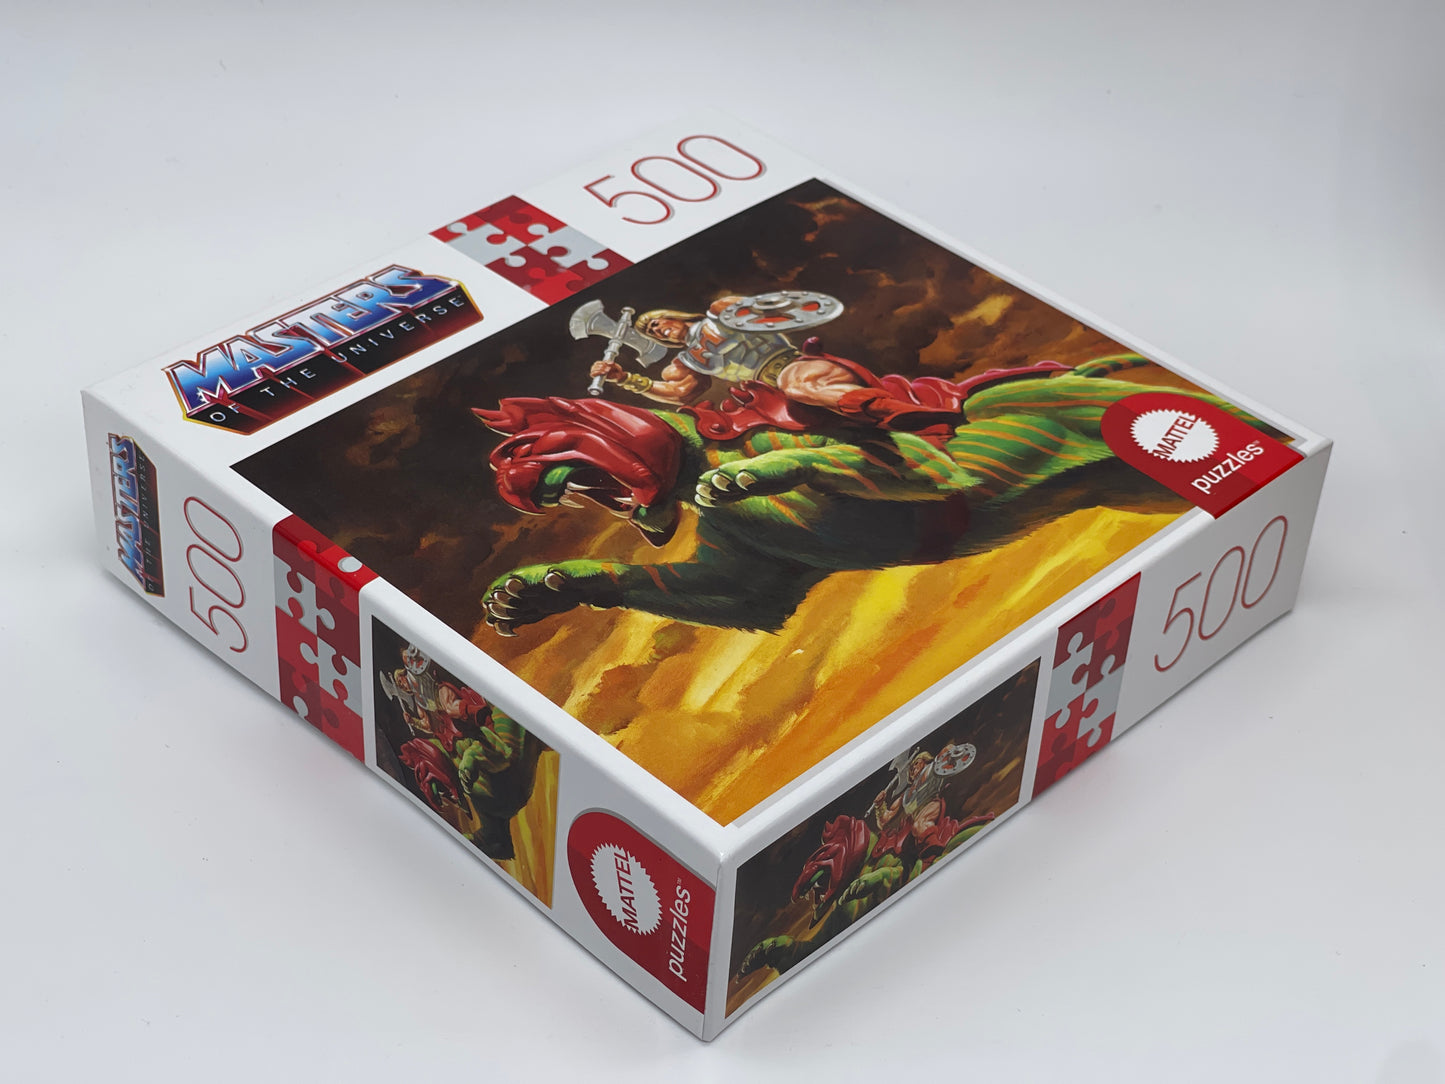 Masters of the Universe "Battle Cat" Puzzle 500 Teile mit Mini Poster 48 x 36 cm (Mattel)